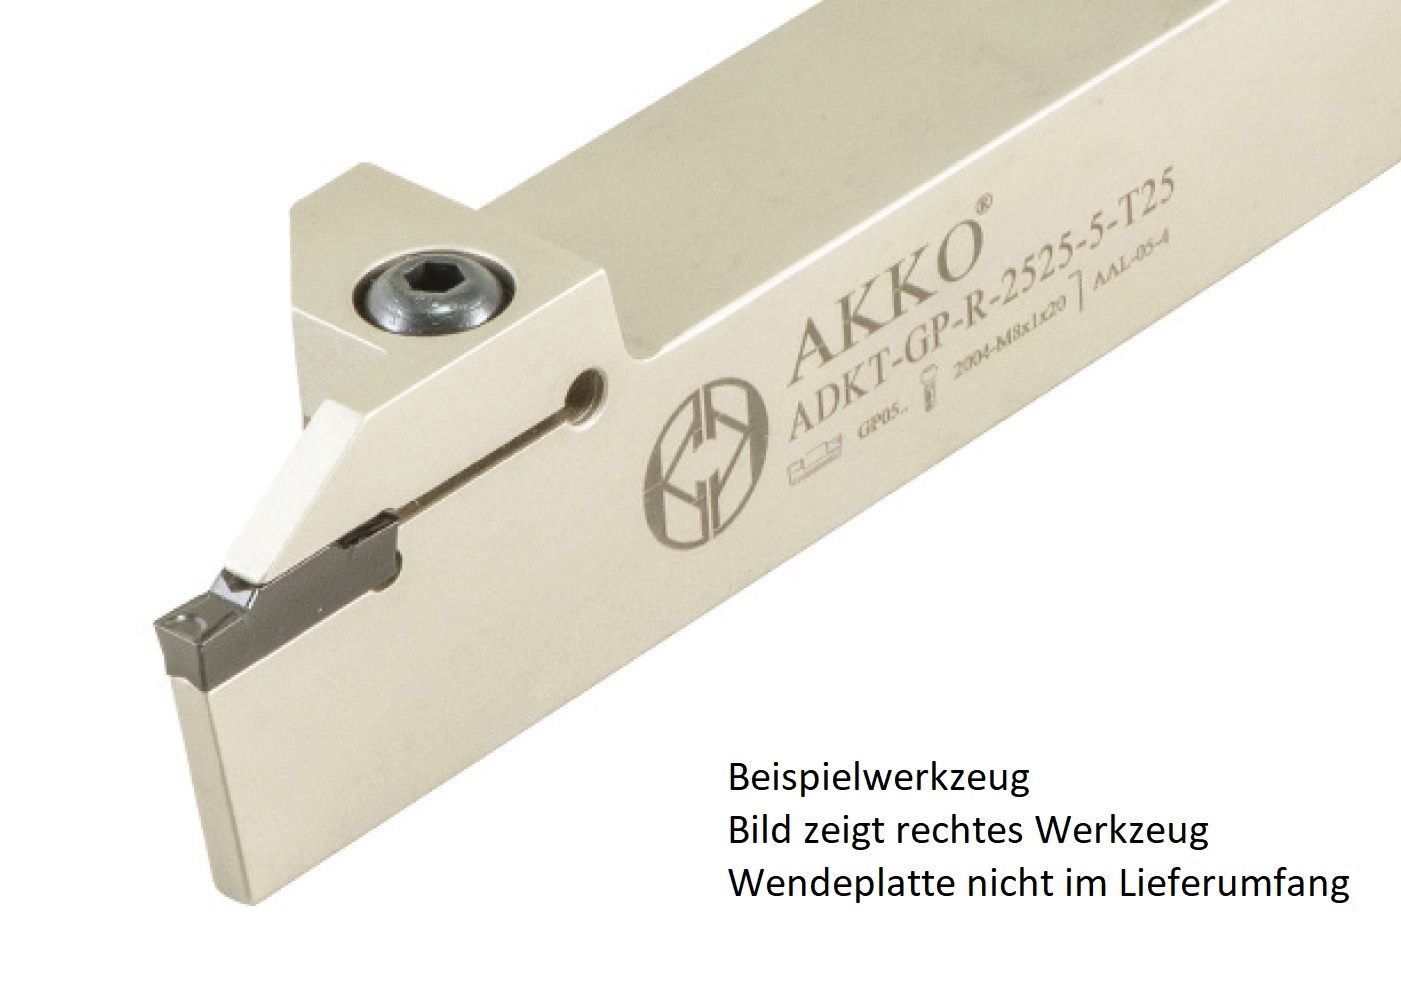 AKKO-Außen-Stechhalter, kompatibel mit Palbit-Stechplatte GP-3
links, Schaft 25 x 25 mm